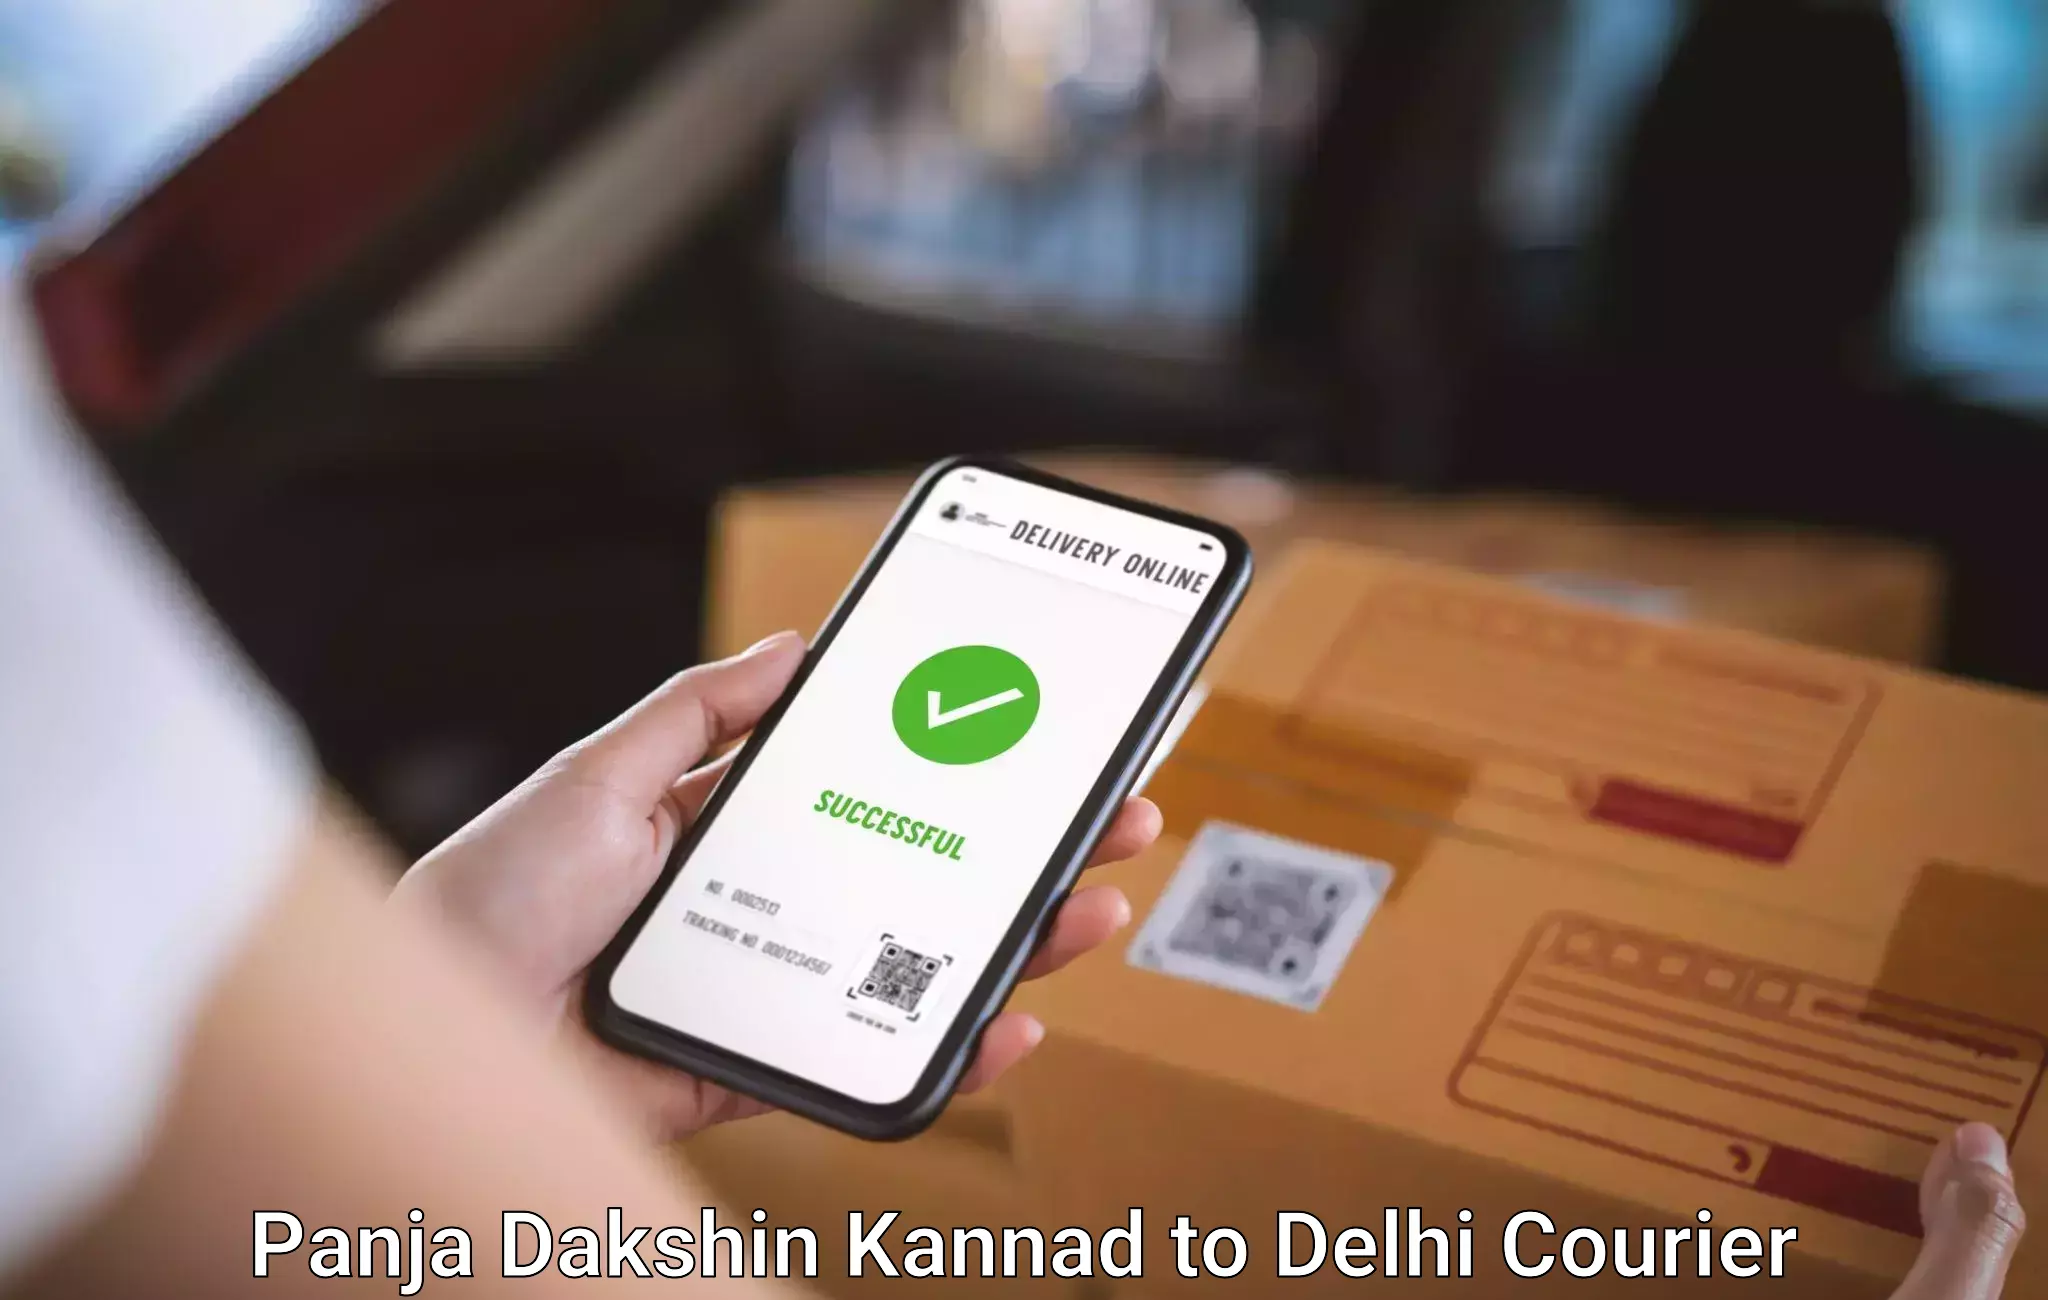 Quick luggage shipment Panja Dakshin Kannad to NIT Delhi